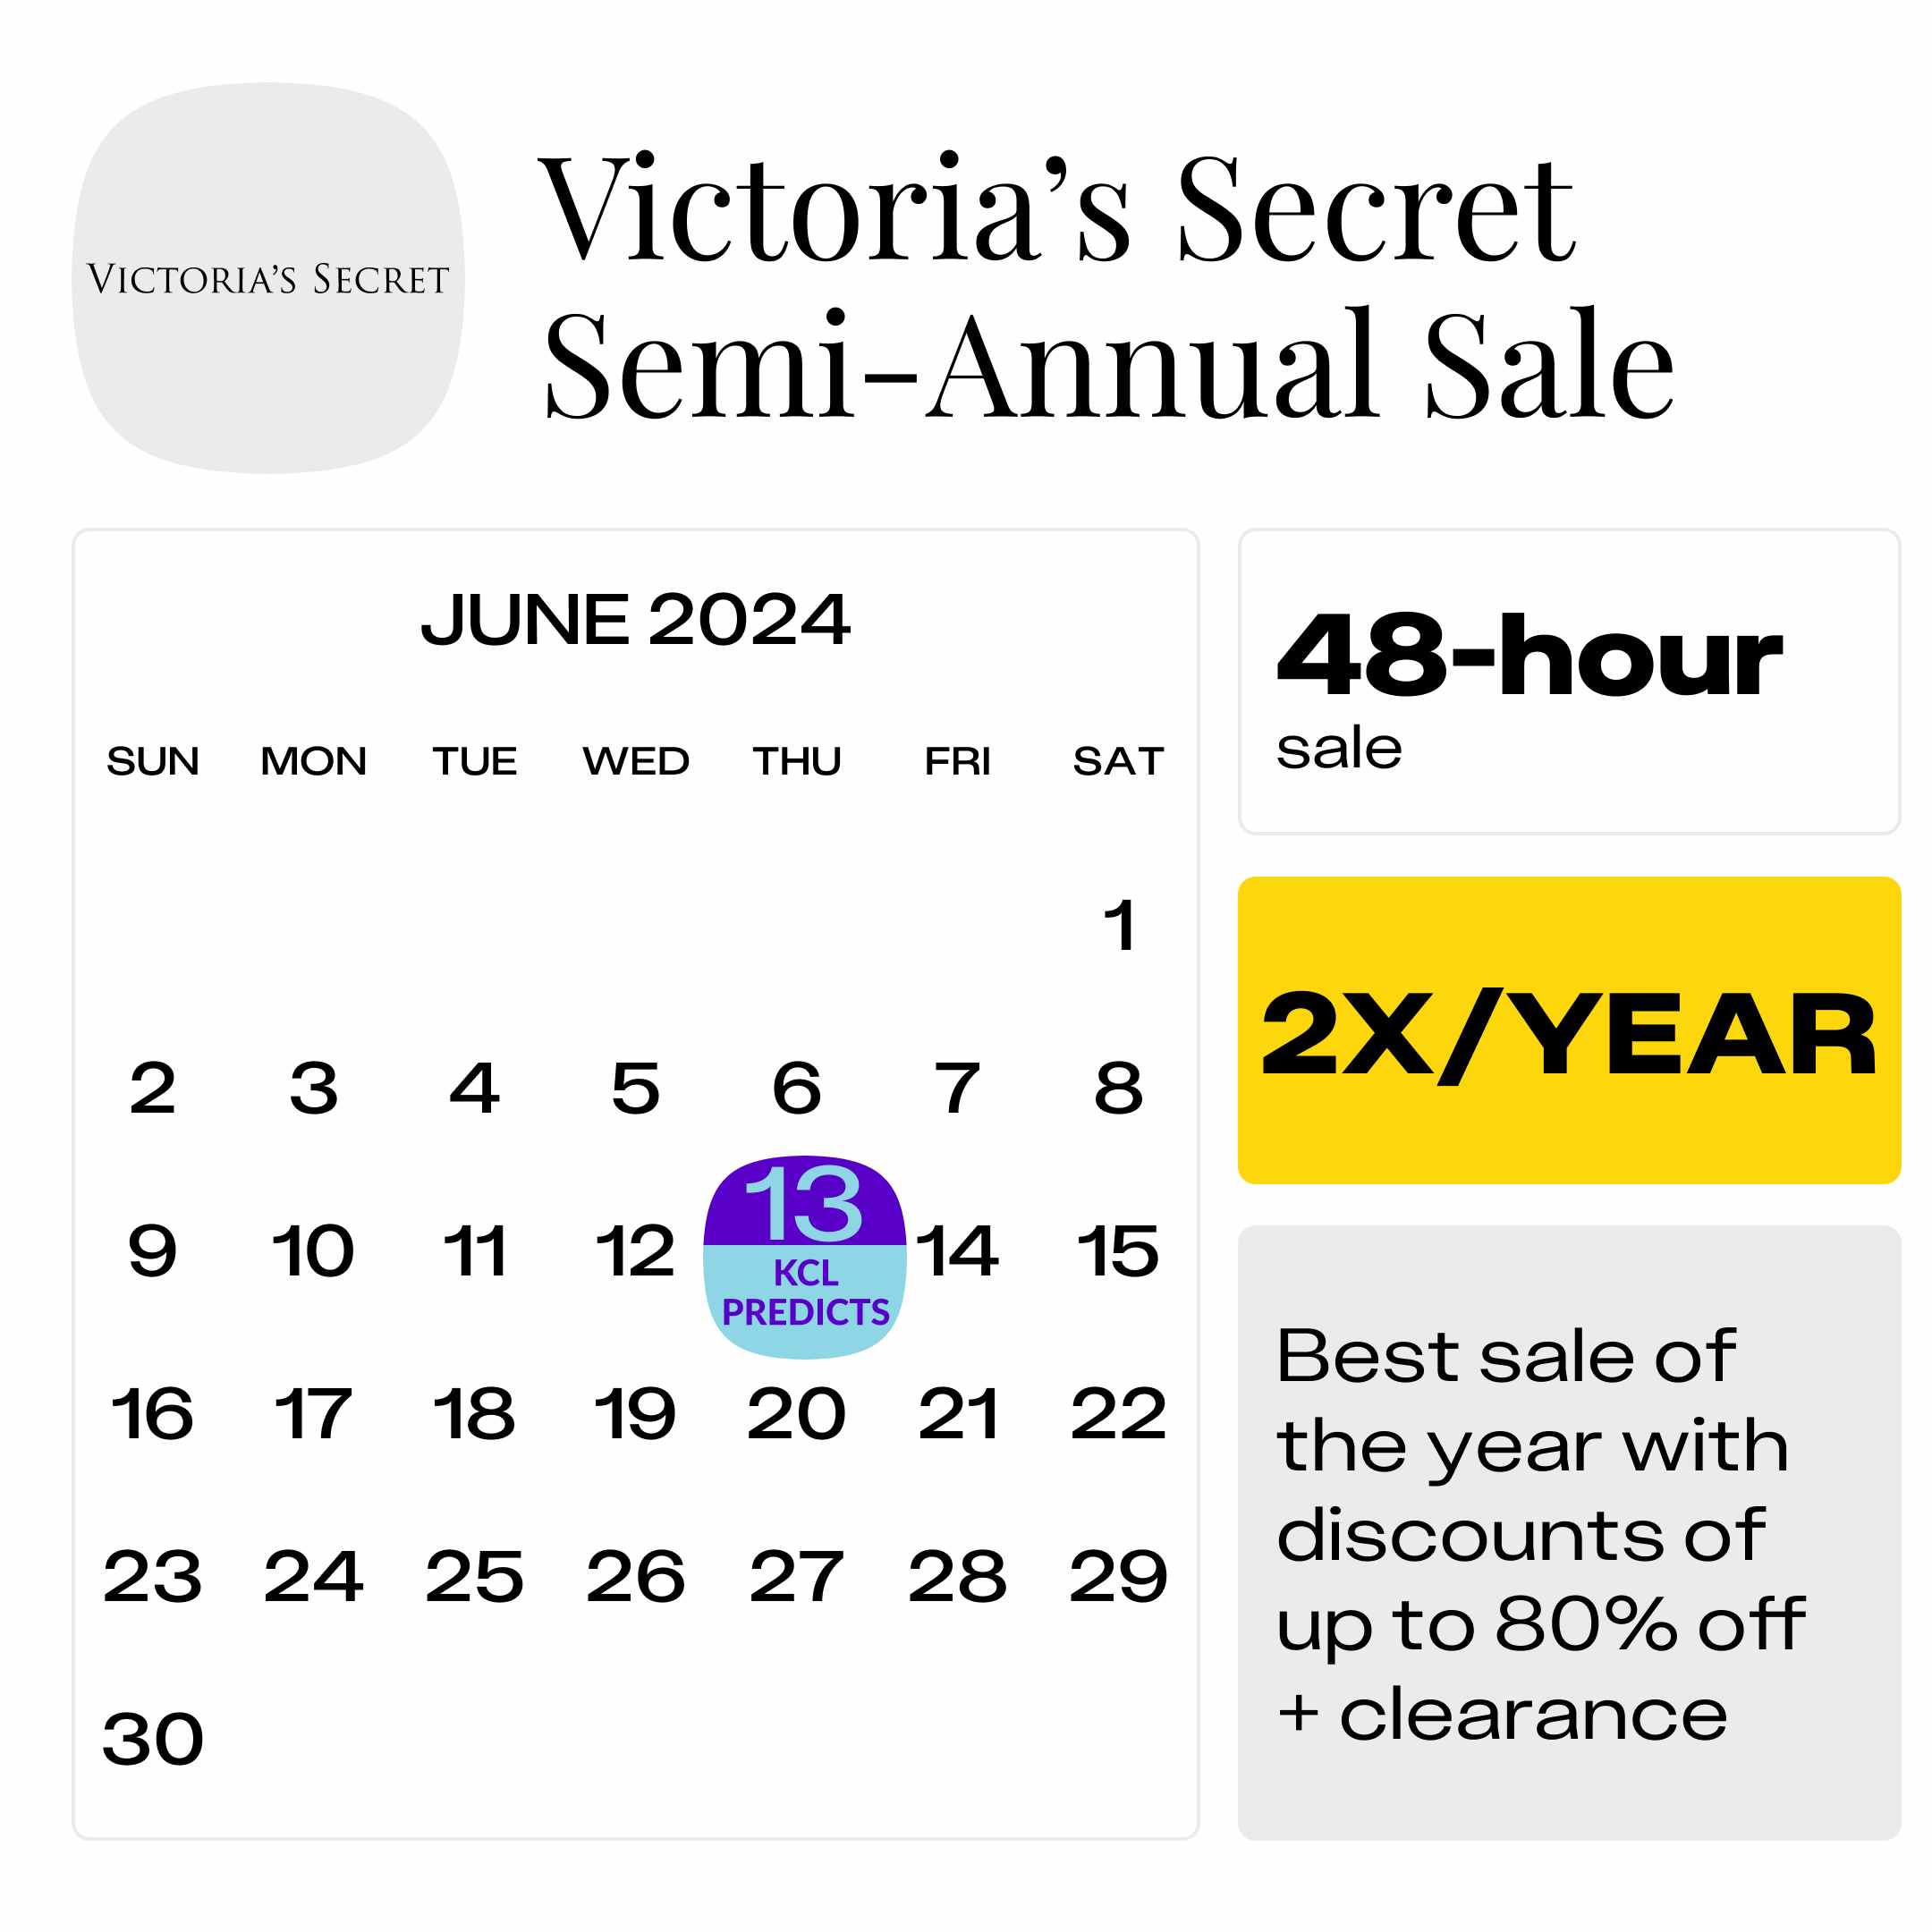 Victoria's Secret Semi-Annual Sale 2023: When, What and Where